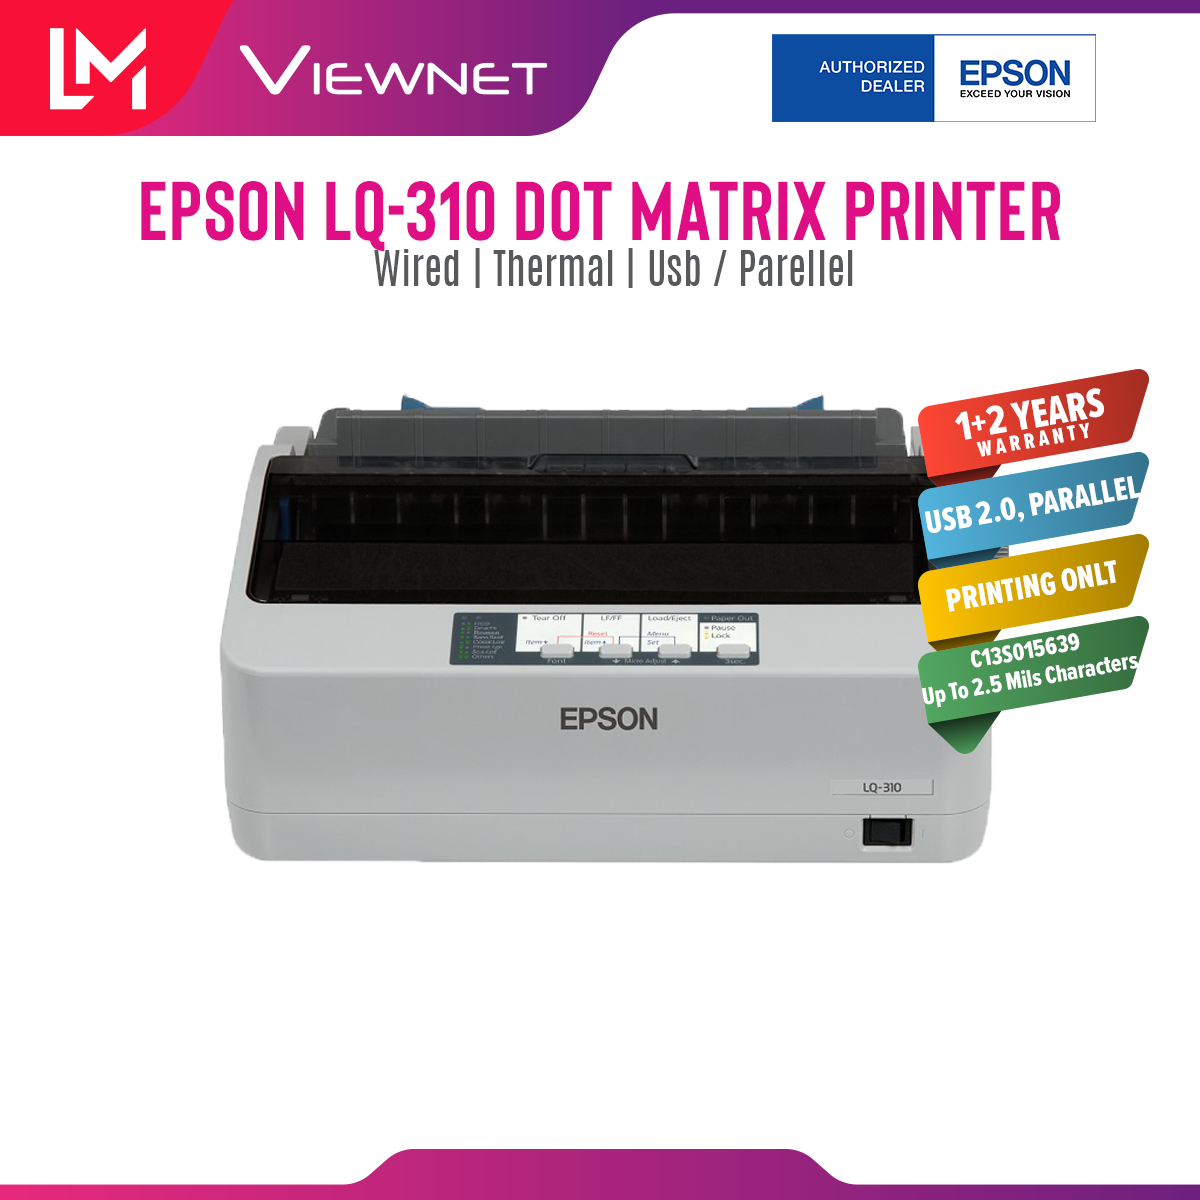 EPSON LQ-310 Dot Matrix Printer 1+3 copies LQ310 24 pin